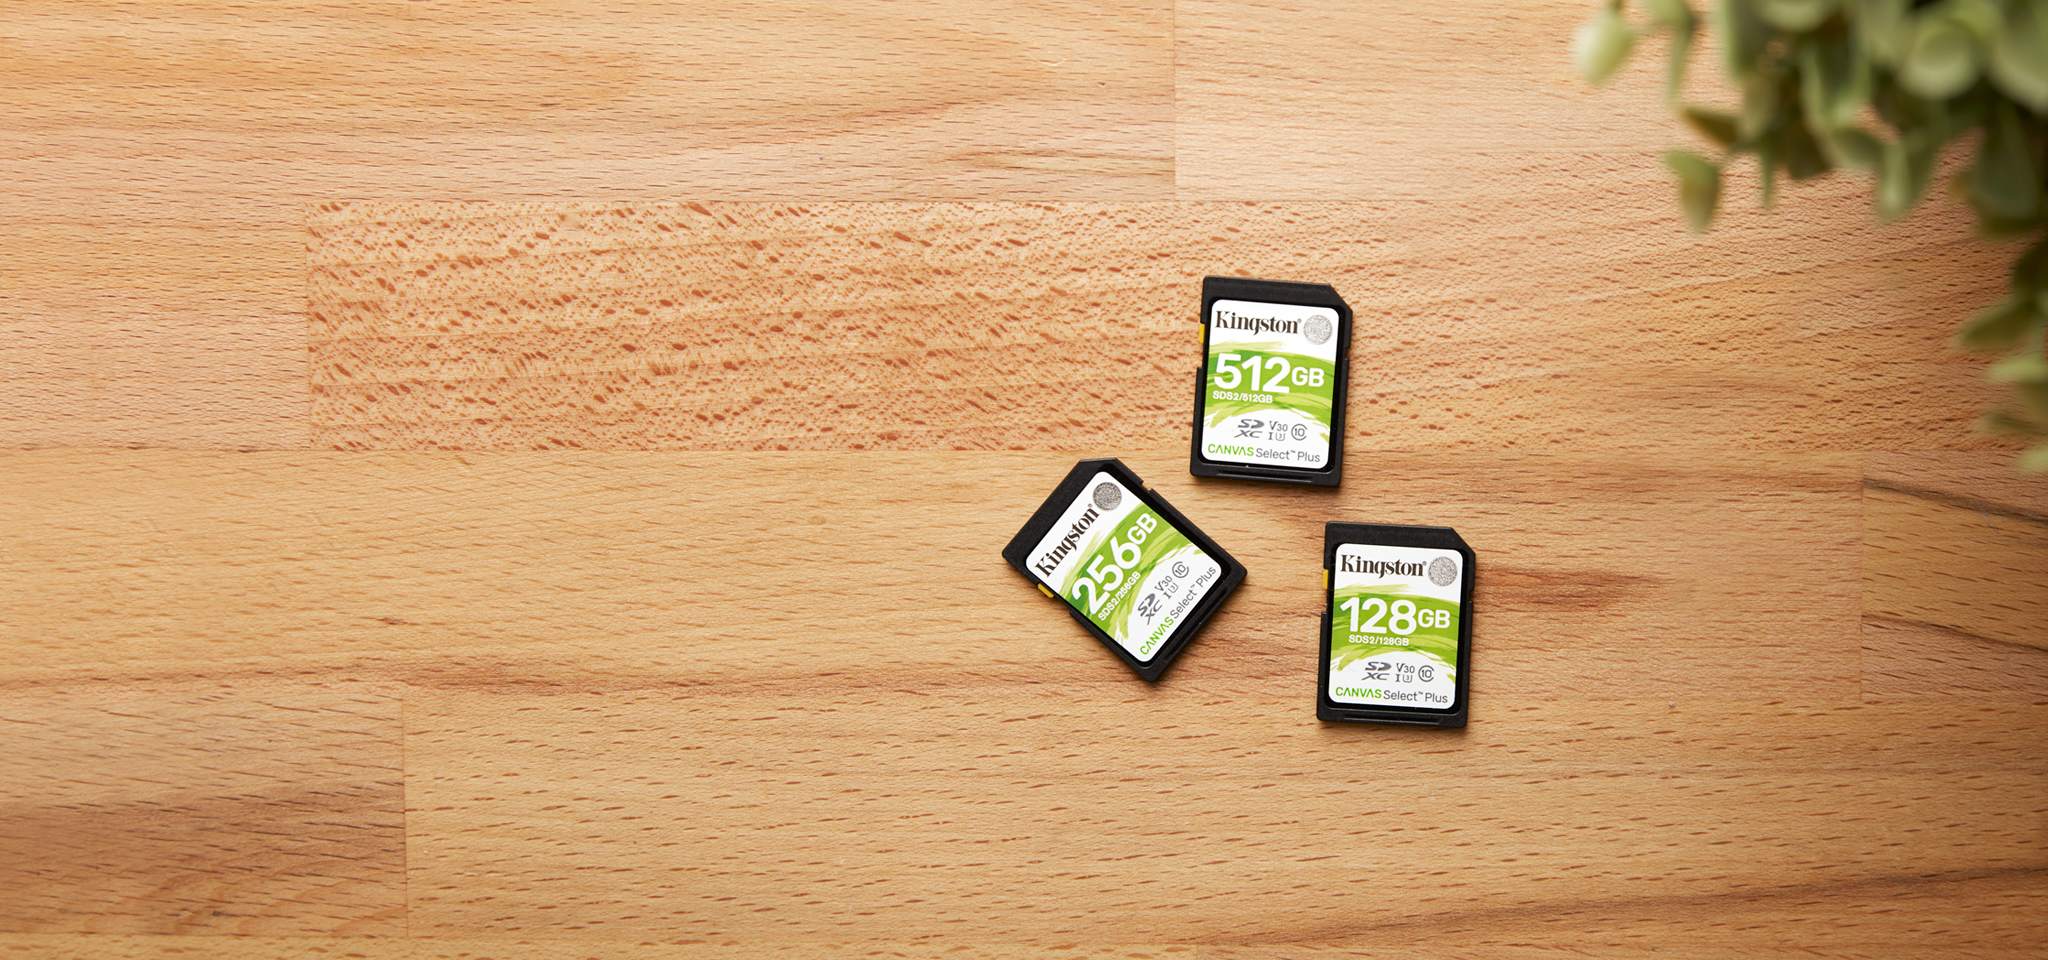 それぞれ容量の異なる 3 枚の Canvas Select Plus SD カードが木目調の机の上に置かれている